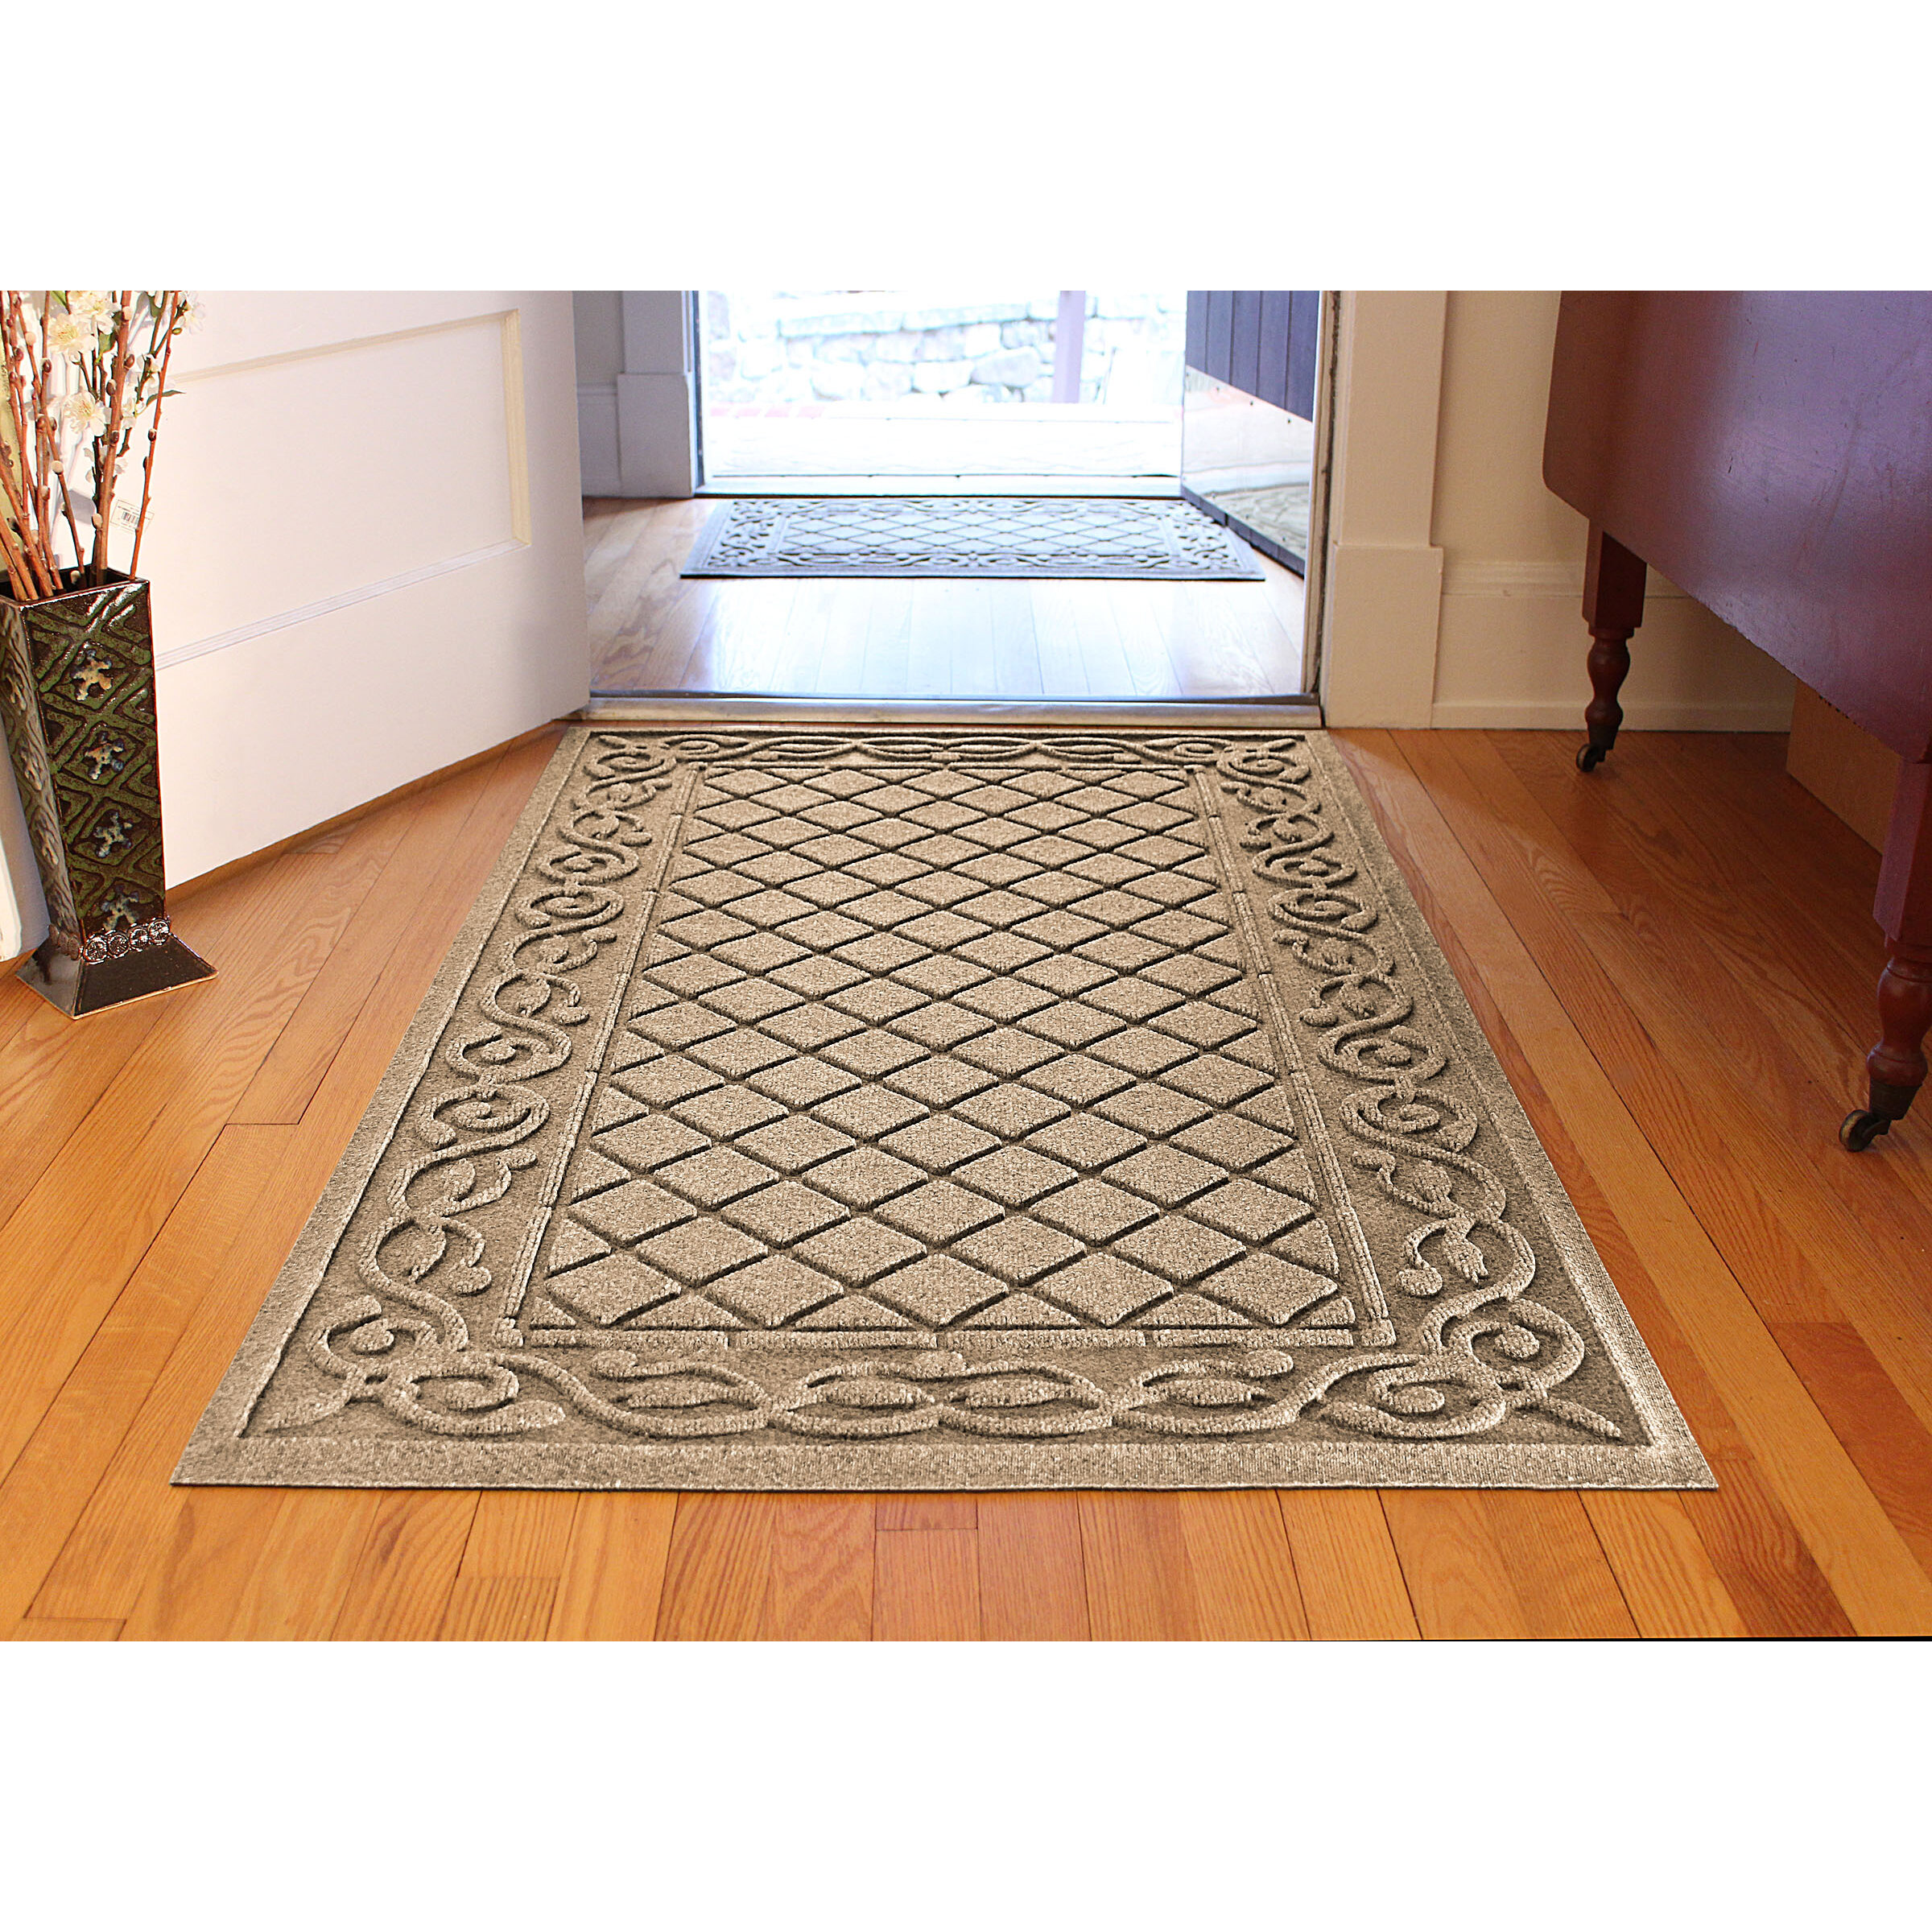 Waterhog Indoor/Outdoor Leaves Doormat, 3' x 5' - Medium Gray